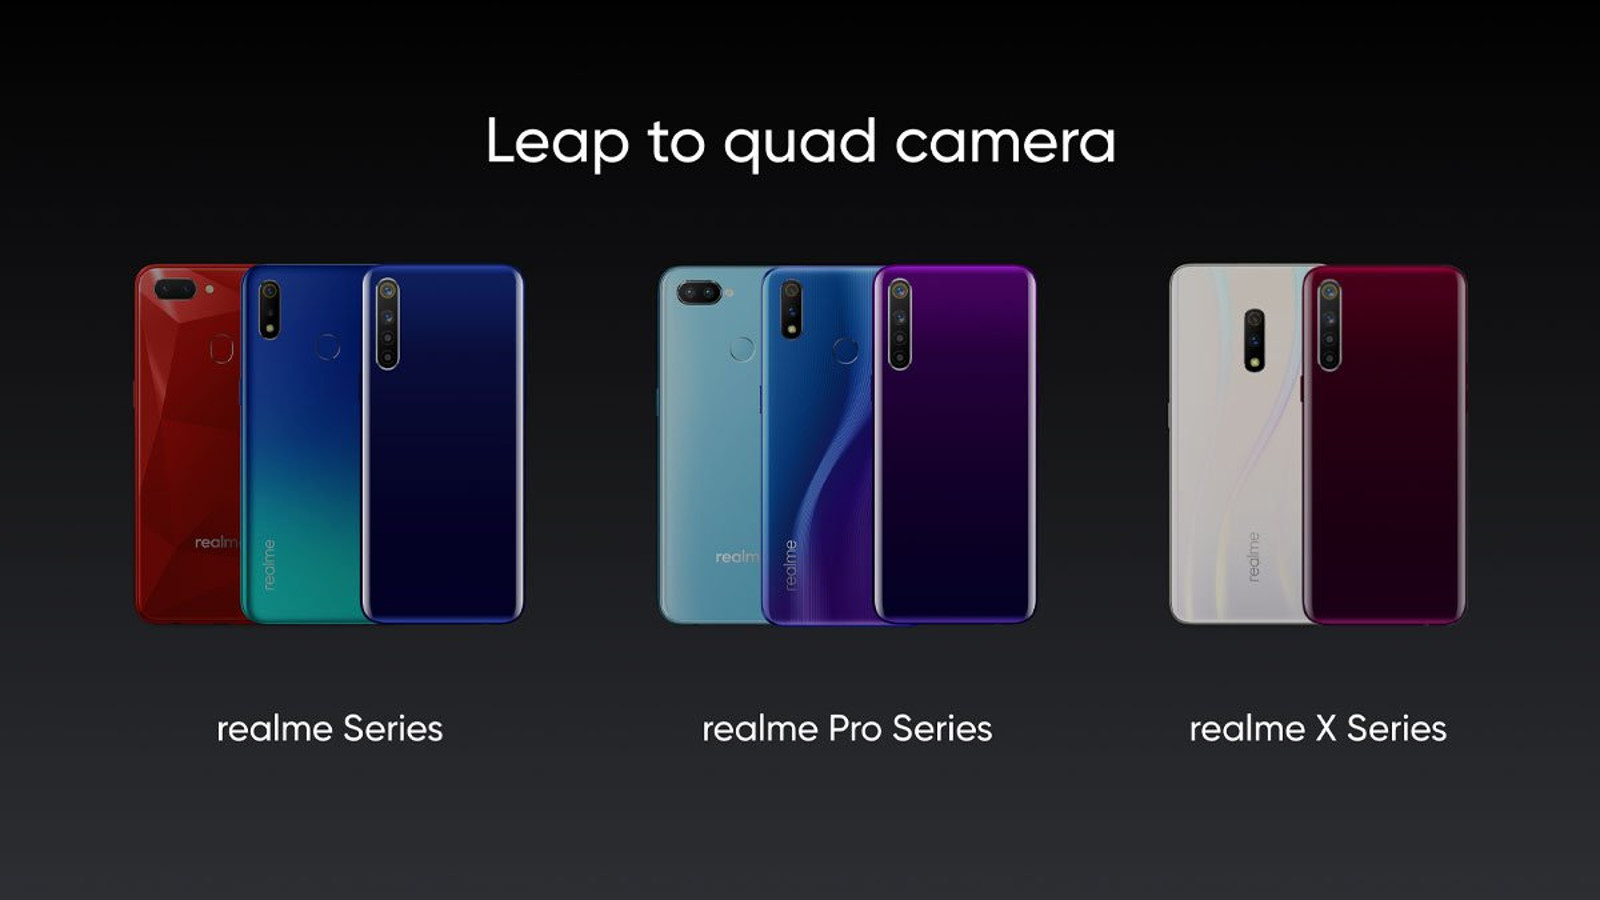 realme phones with quad cameras.